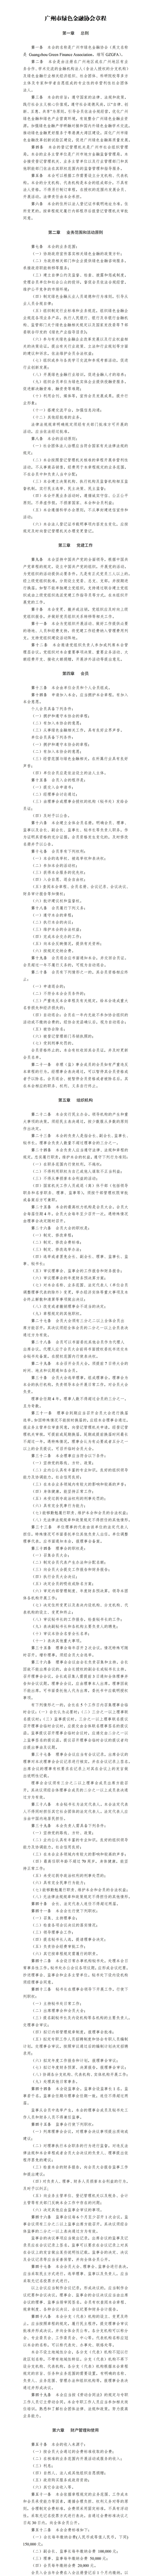 广州市绿色金融协会章程（2020）_01.jpg